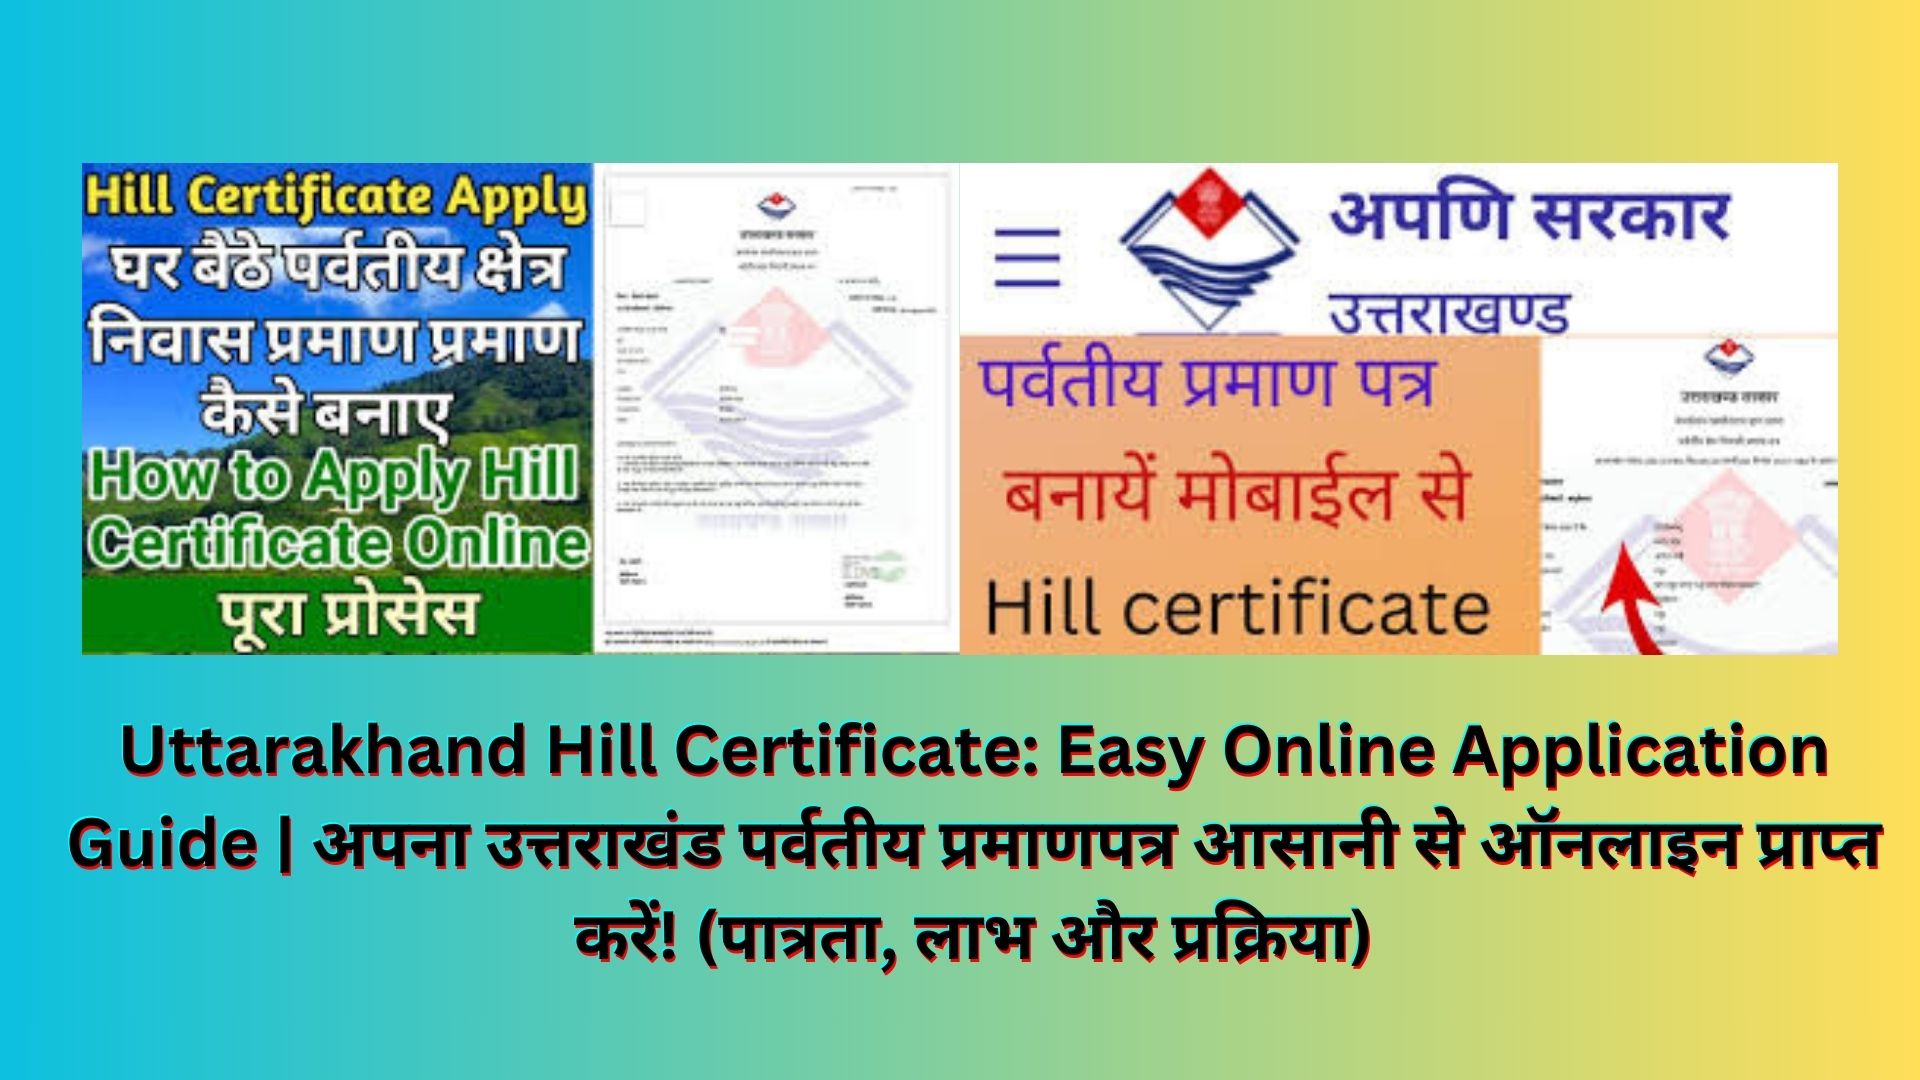 Uttarakhand Hill Certificate: Easy Online Application Guide | अपना उत्तराखंड पर्वतीय प्रमाणपत्र आसानी से ऑनलाइन प्राप्त करें! (पात्रता, लाभ और प्रक्रिया)